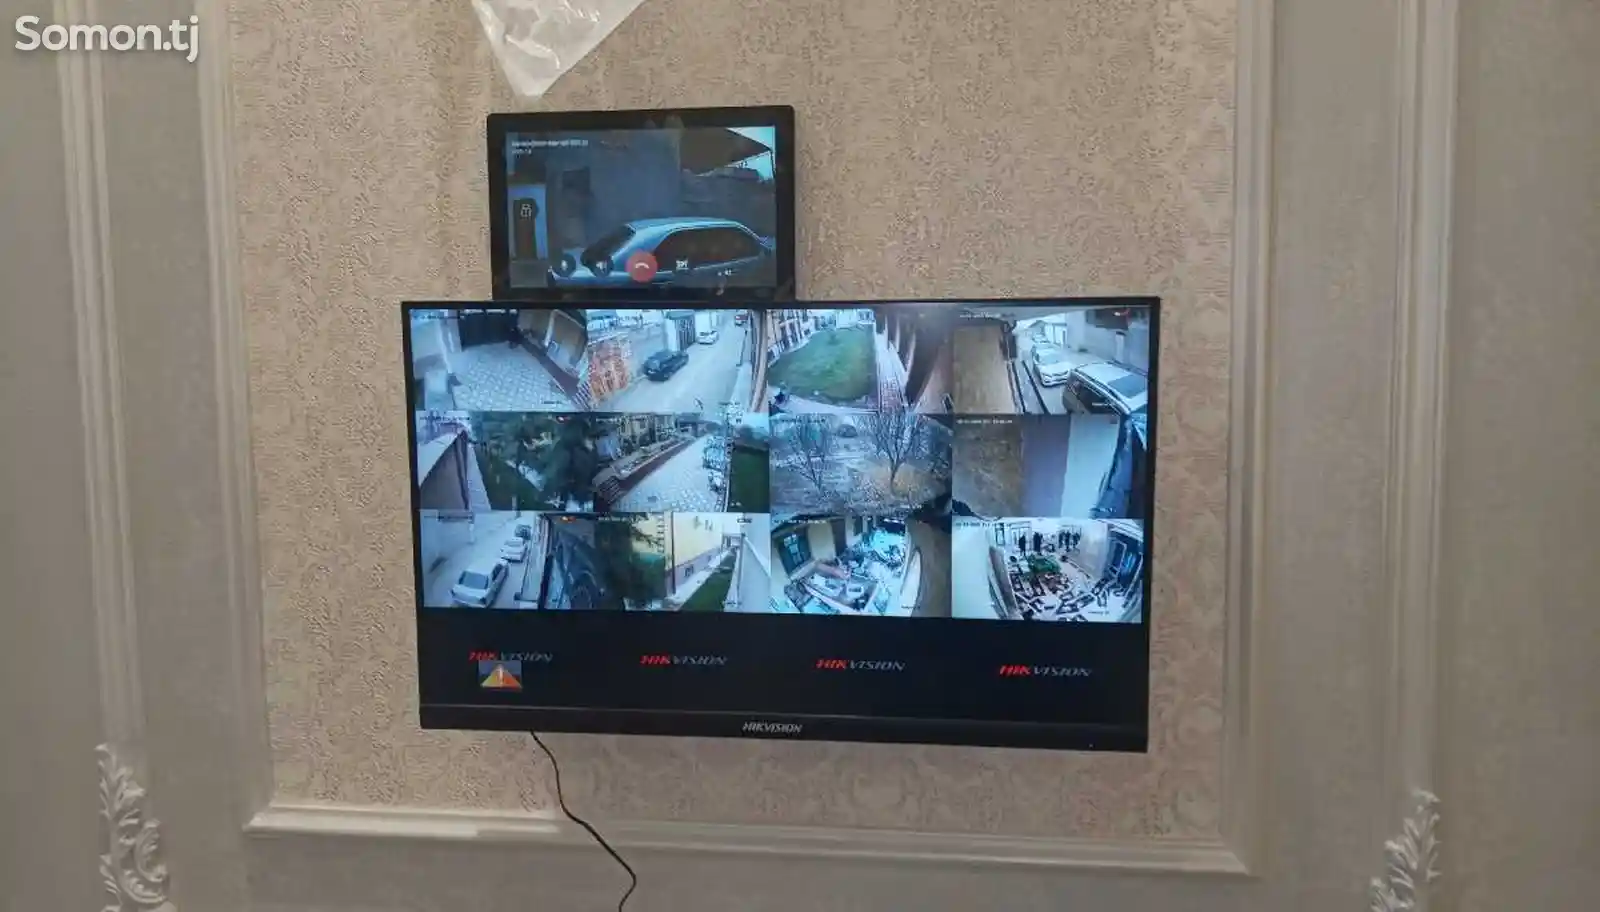 Установка камер видеонаблюдения установка через интернет на телефон-7